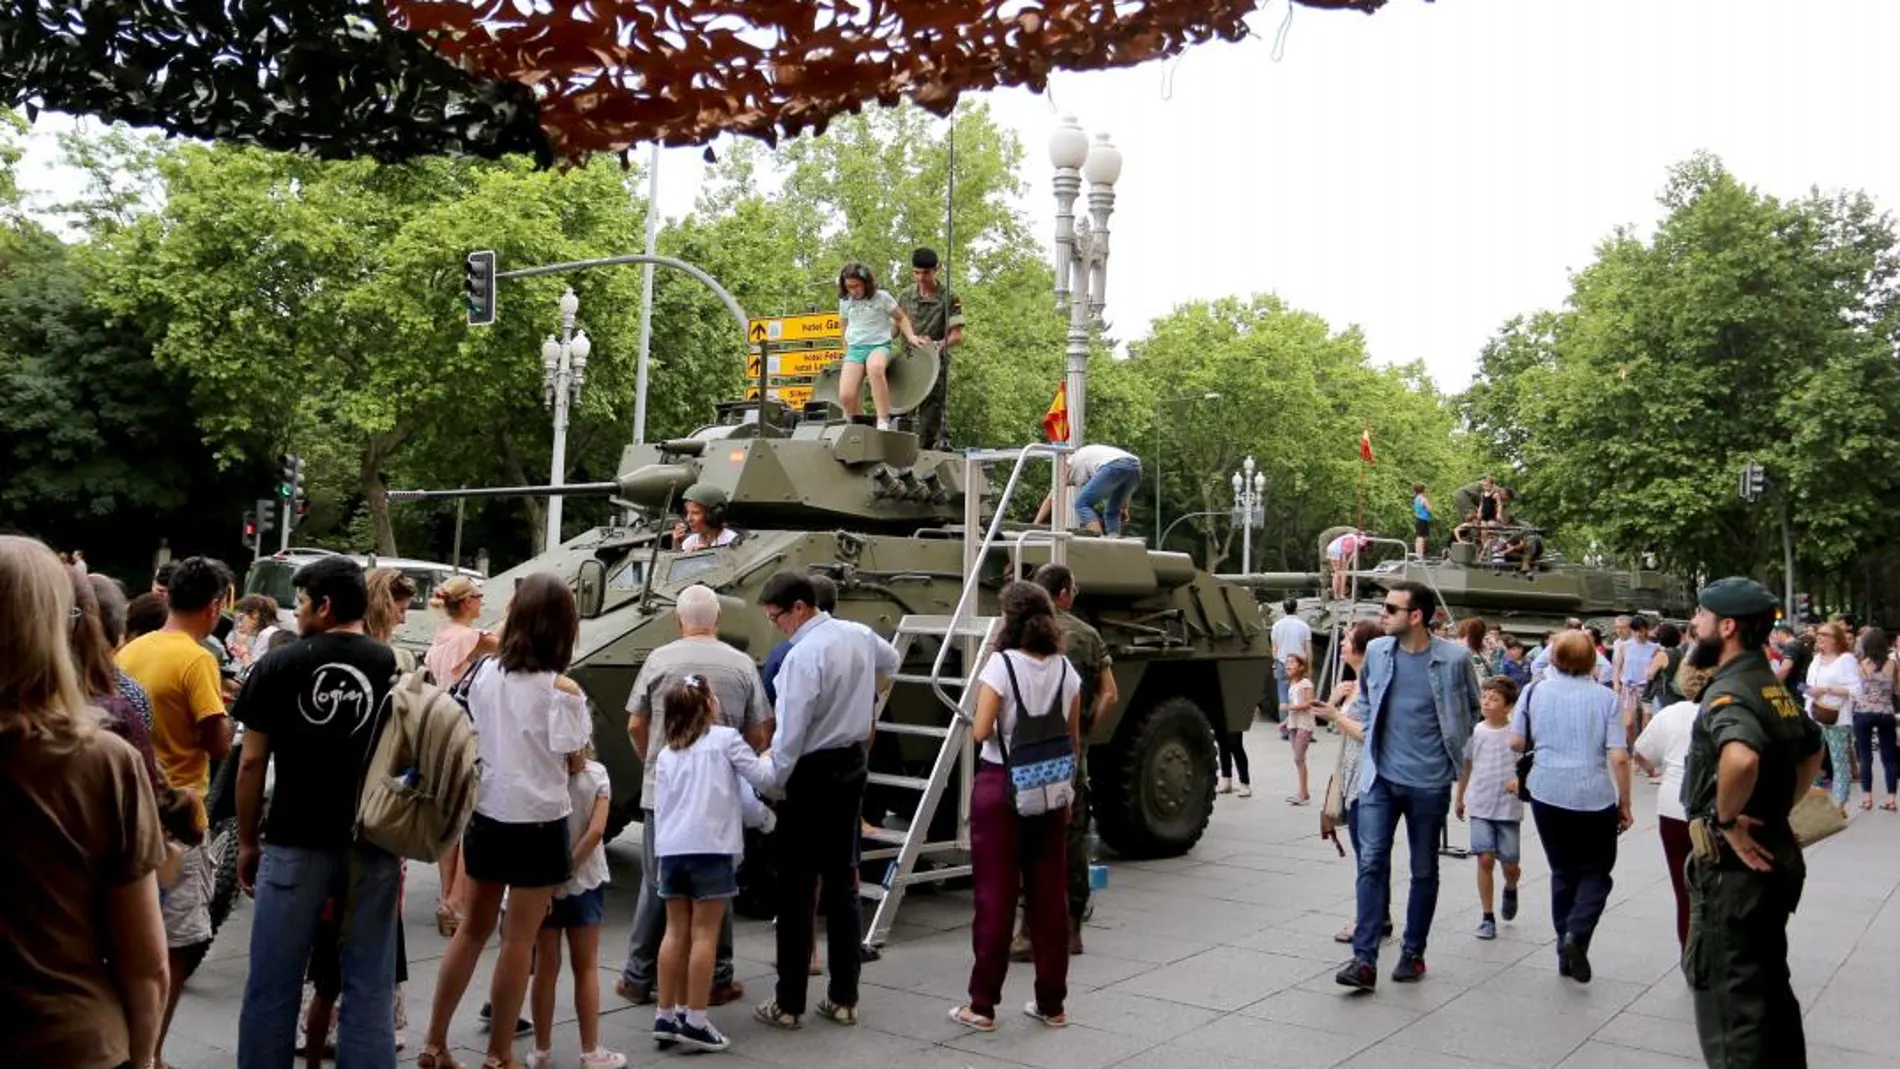 La muestra estática de material militar, con carros de combate y piezas de alta tecnología, que se expone junto a la Academia de Caballería de Valladolid, atrae cada año a miles de personas /Ical